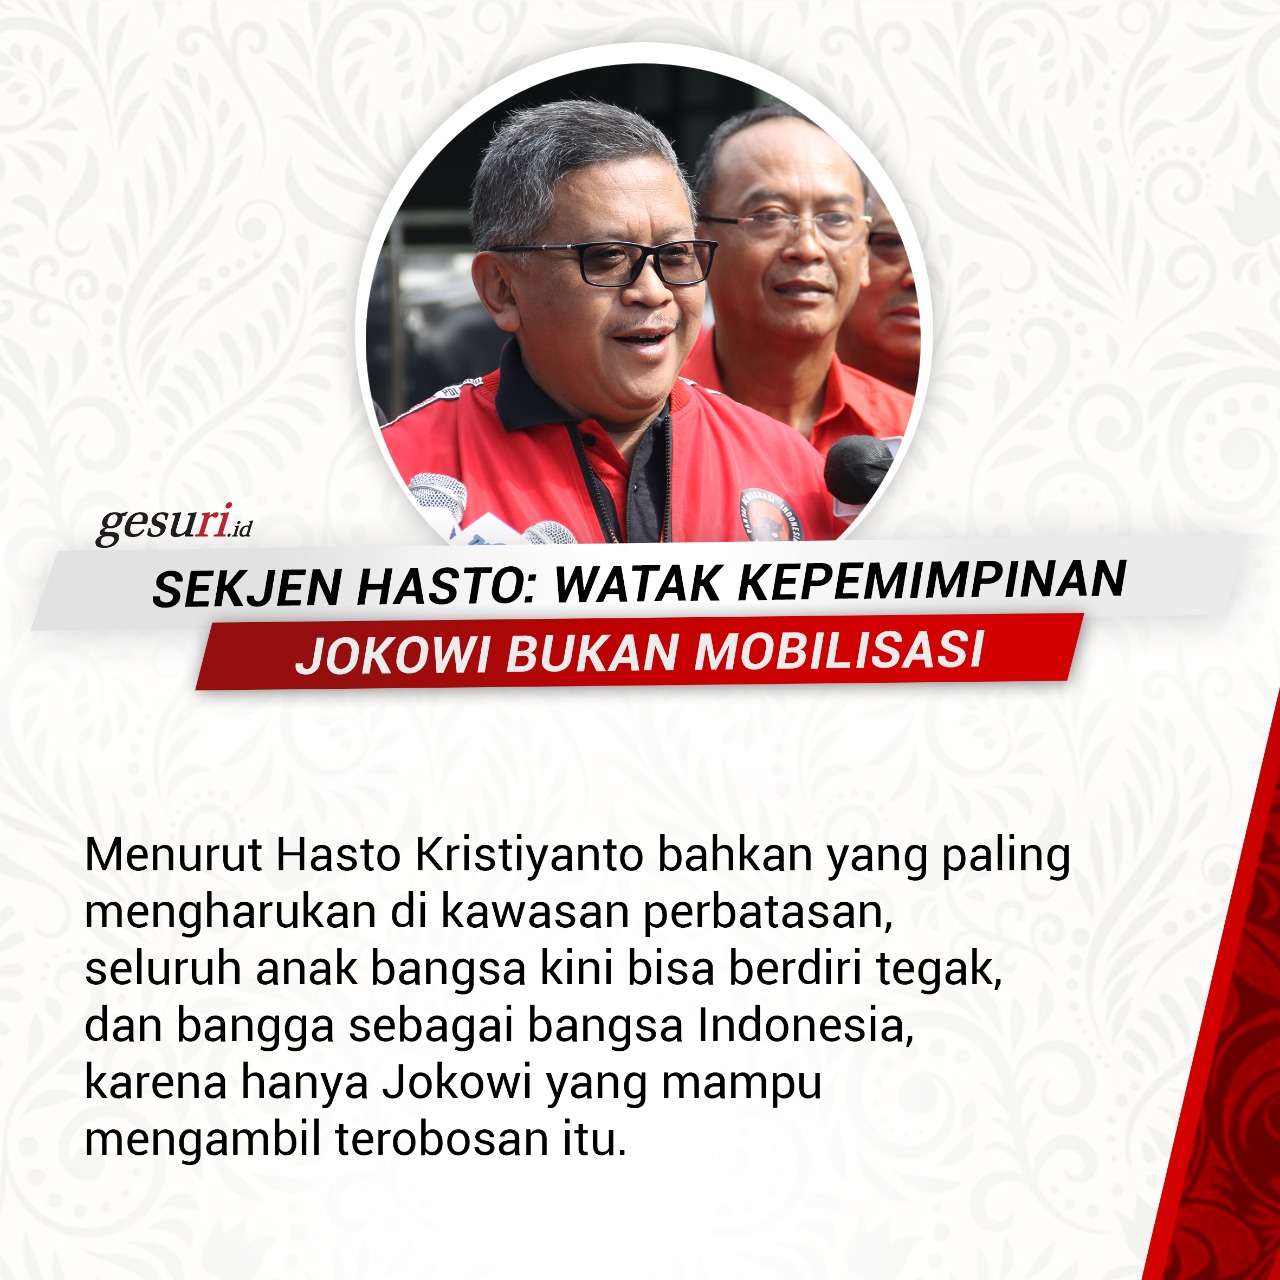 Hasto: Watak Kepemimpinan Jokowi Bukan Mobilisasi (4/8)